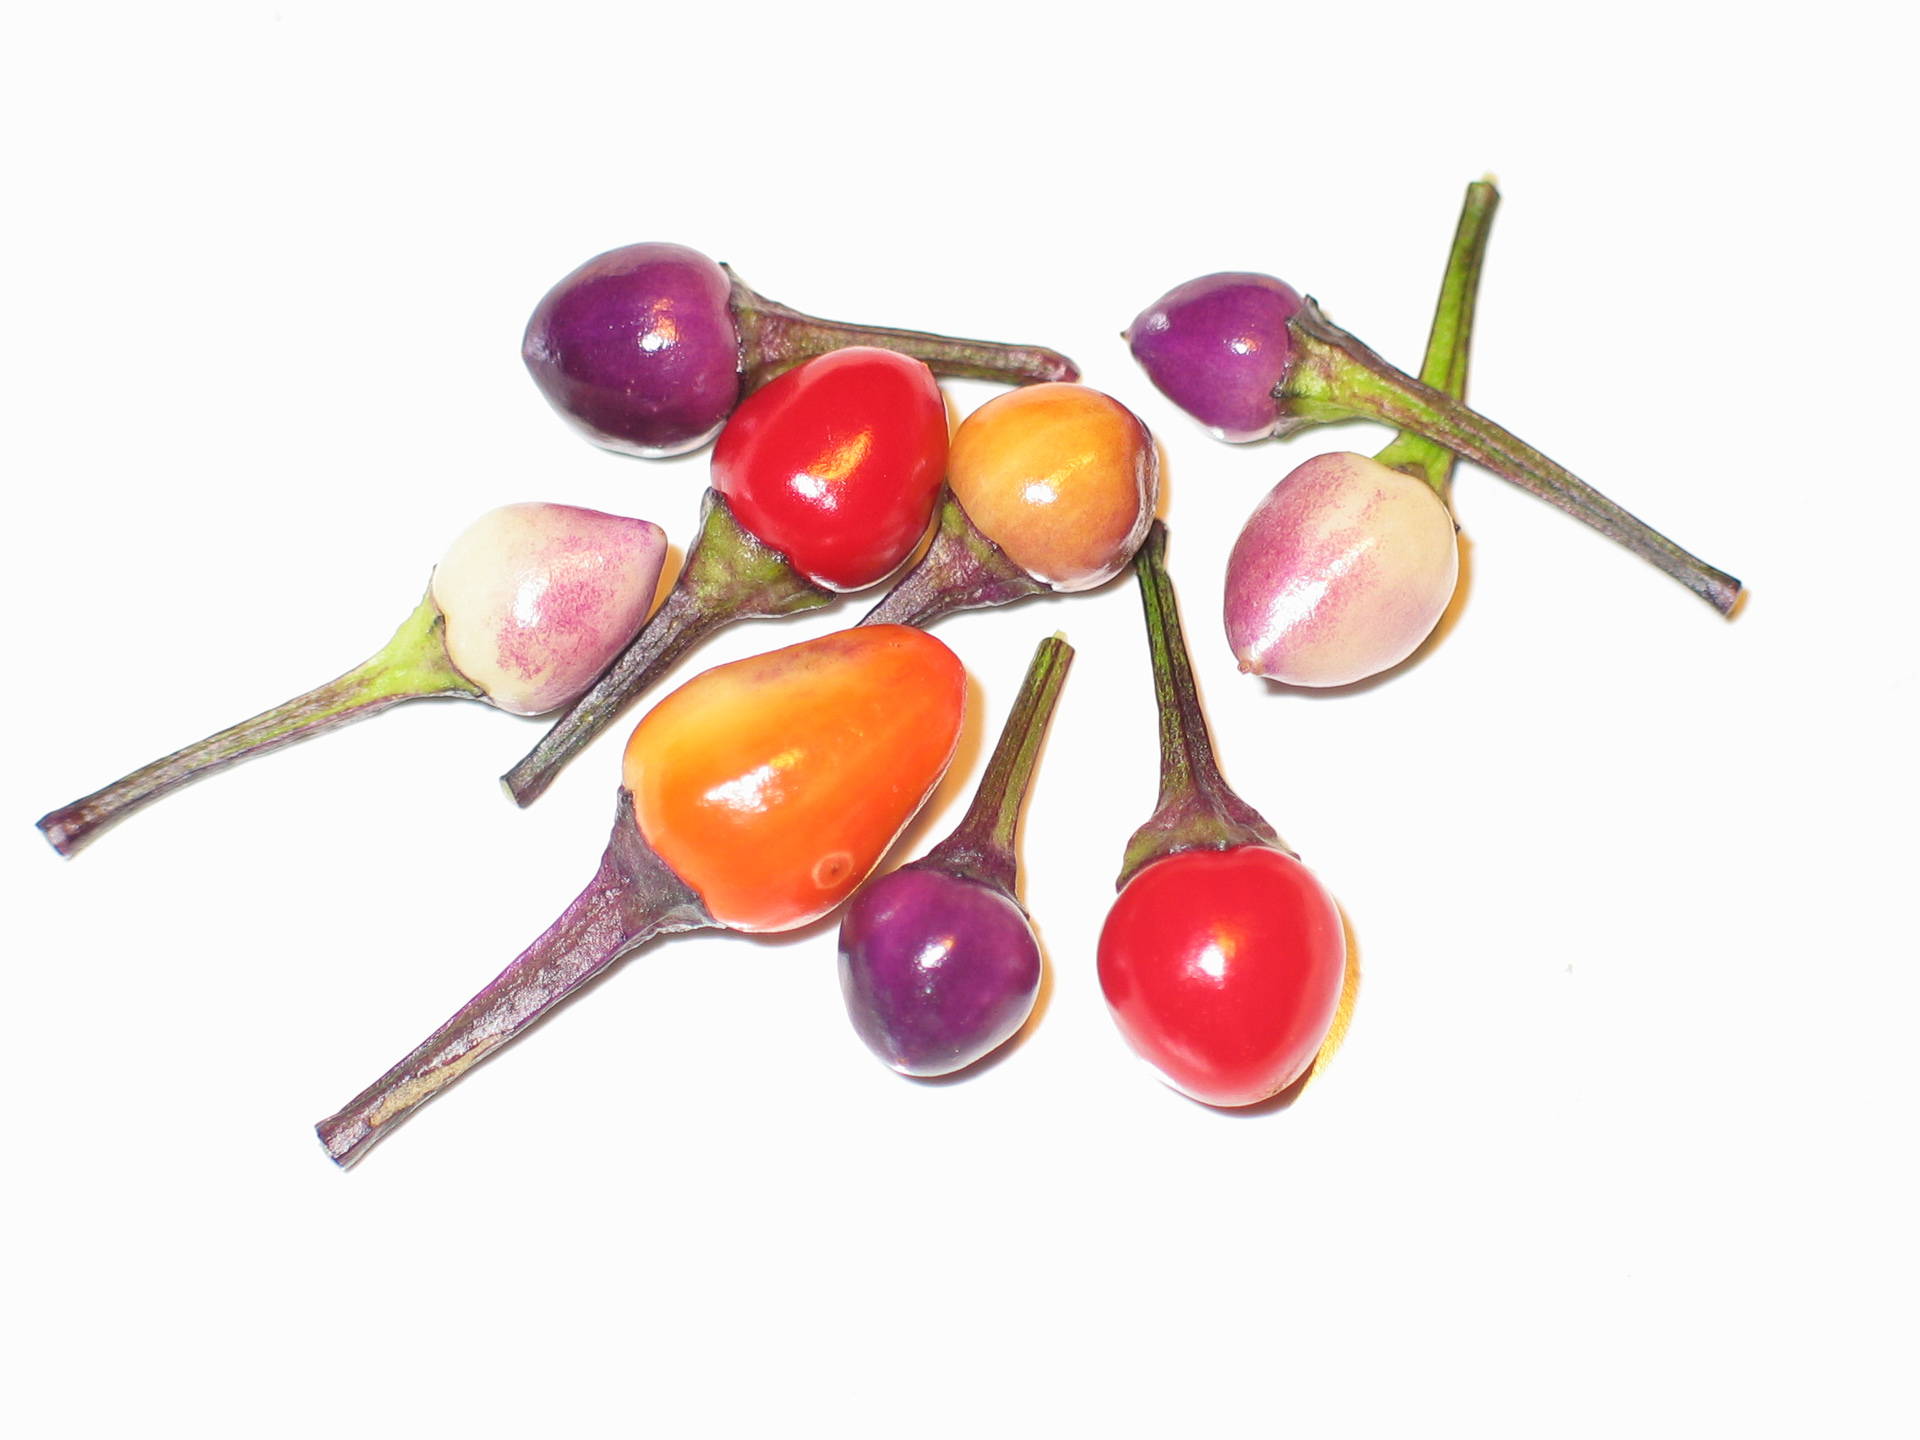 Pimenta - Capsicum chinense - Chilisorte